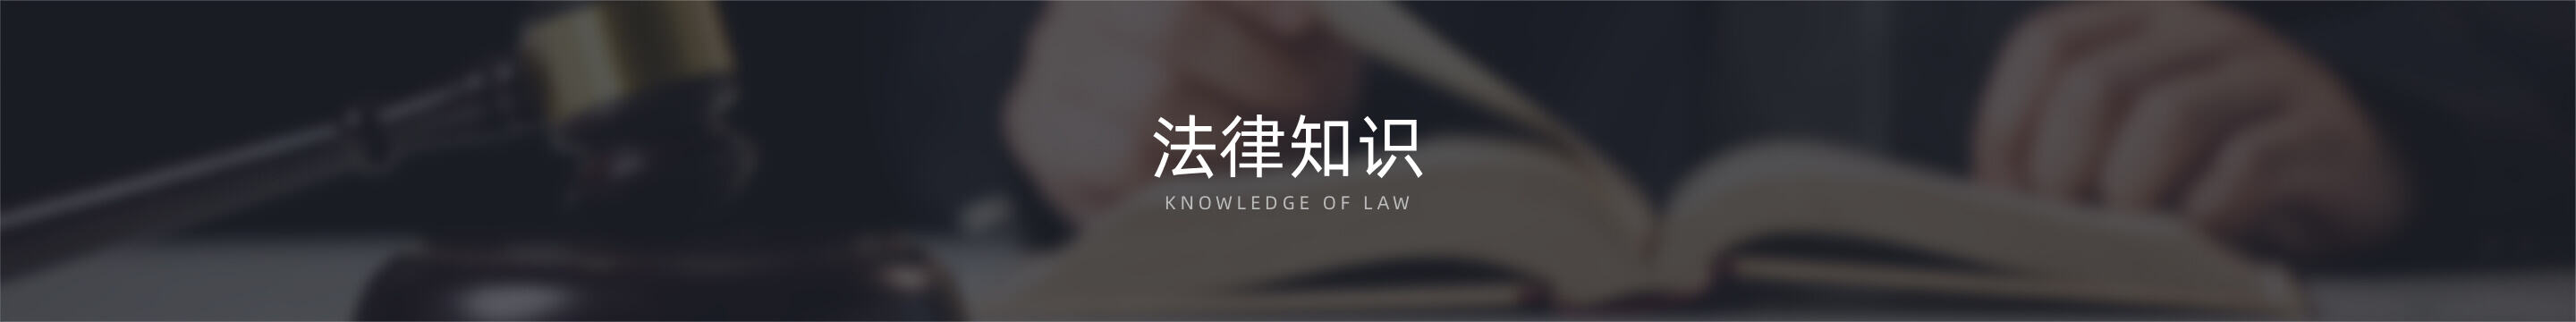 法律知识图